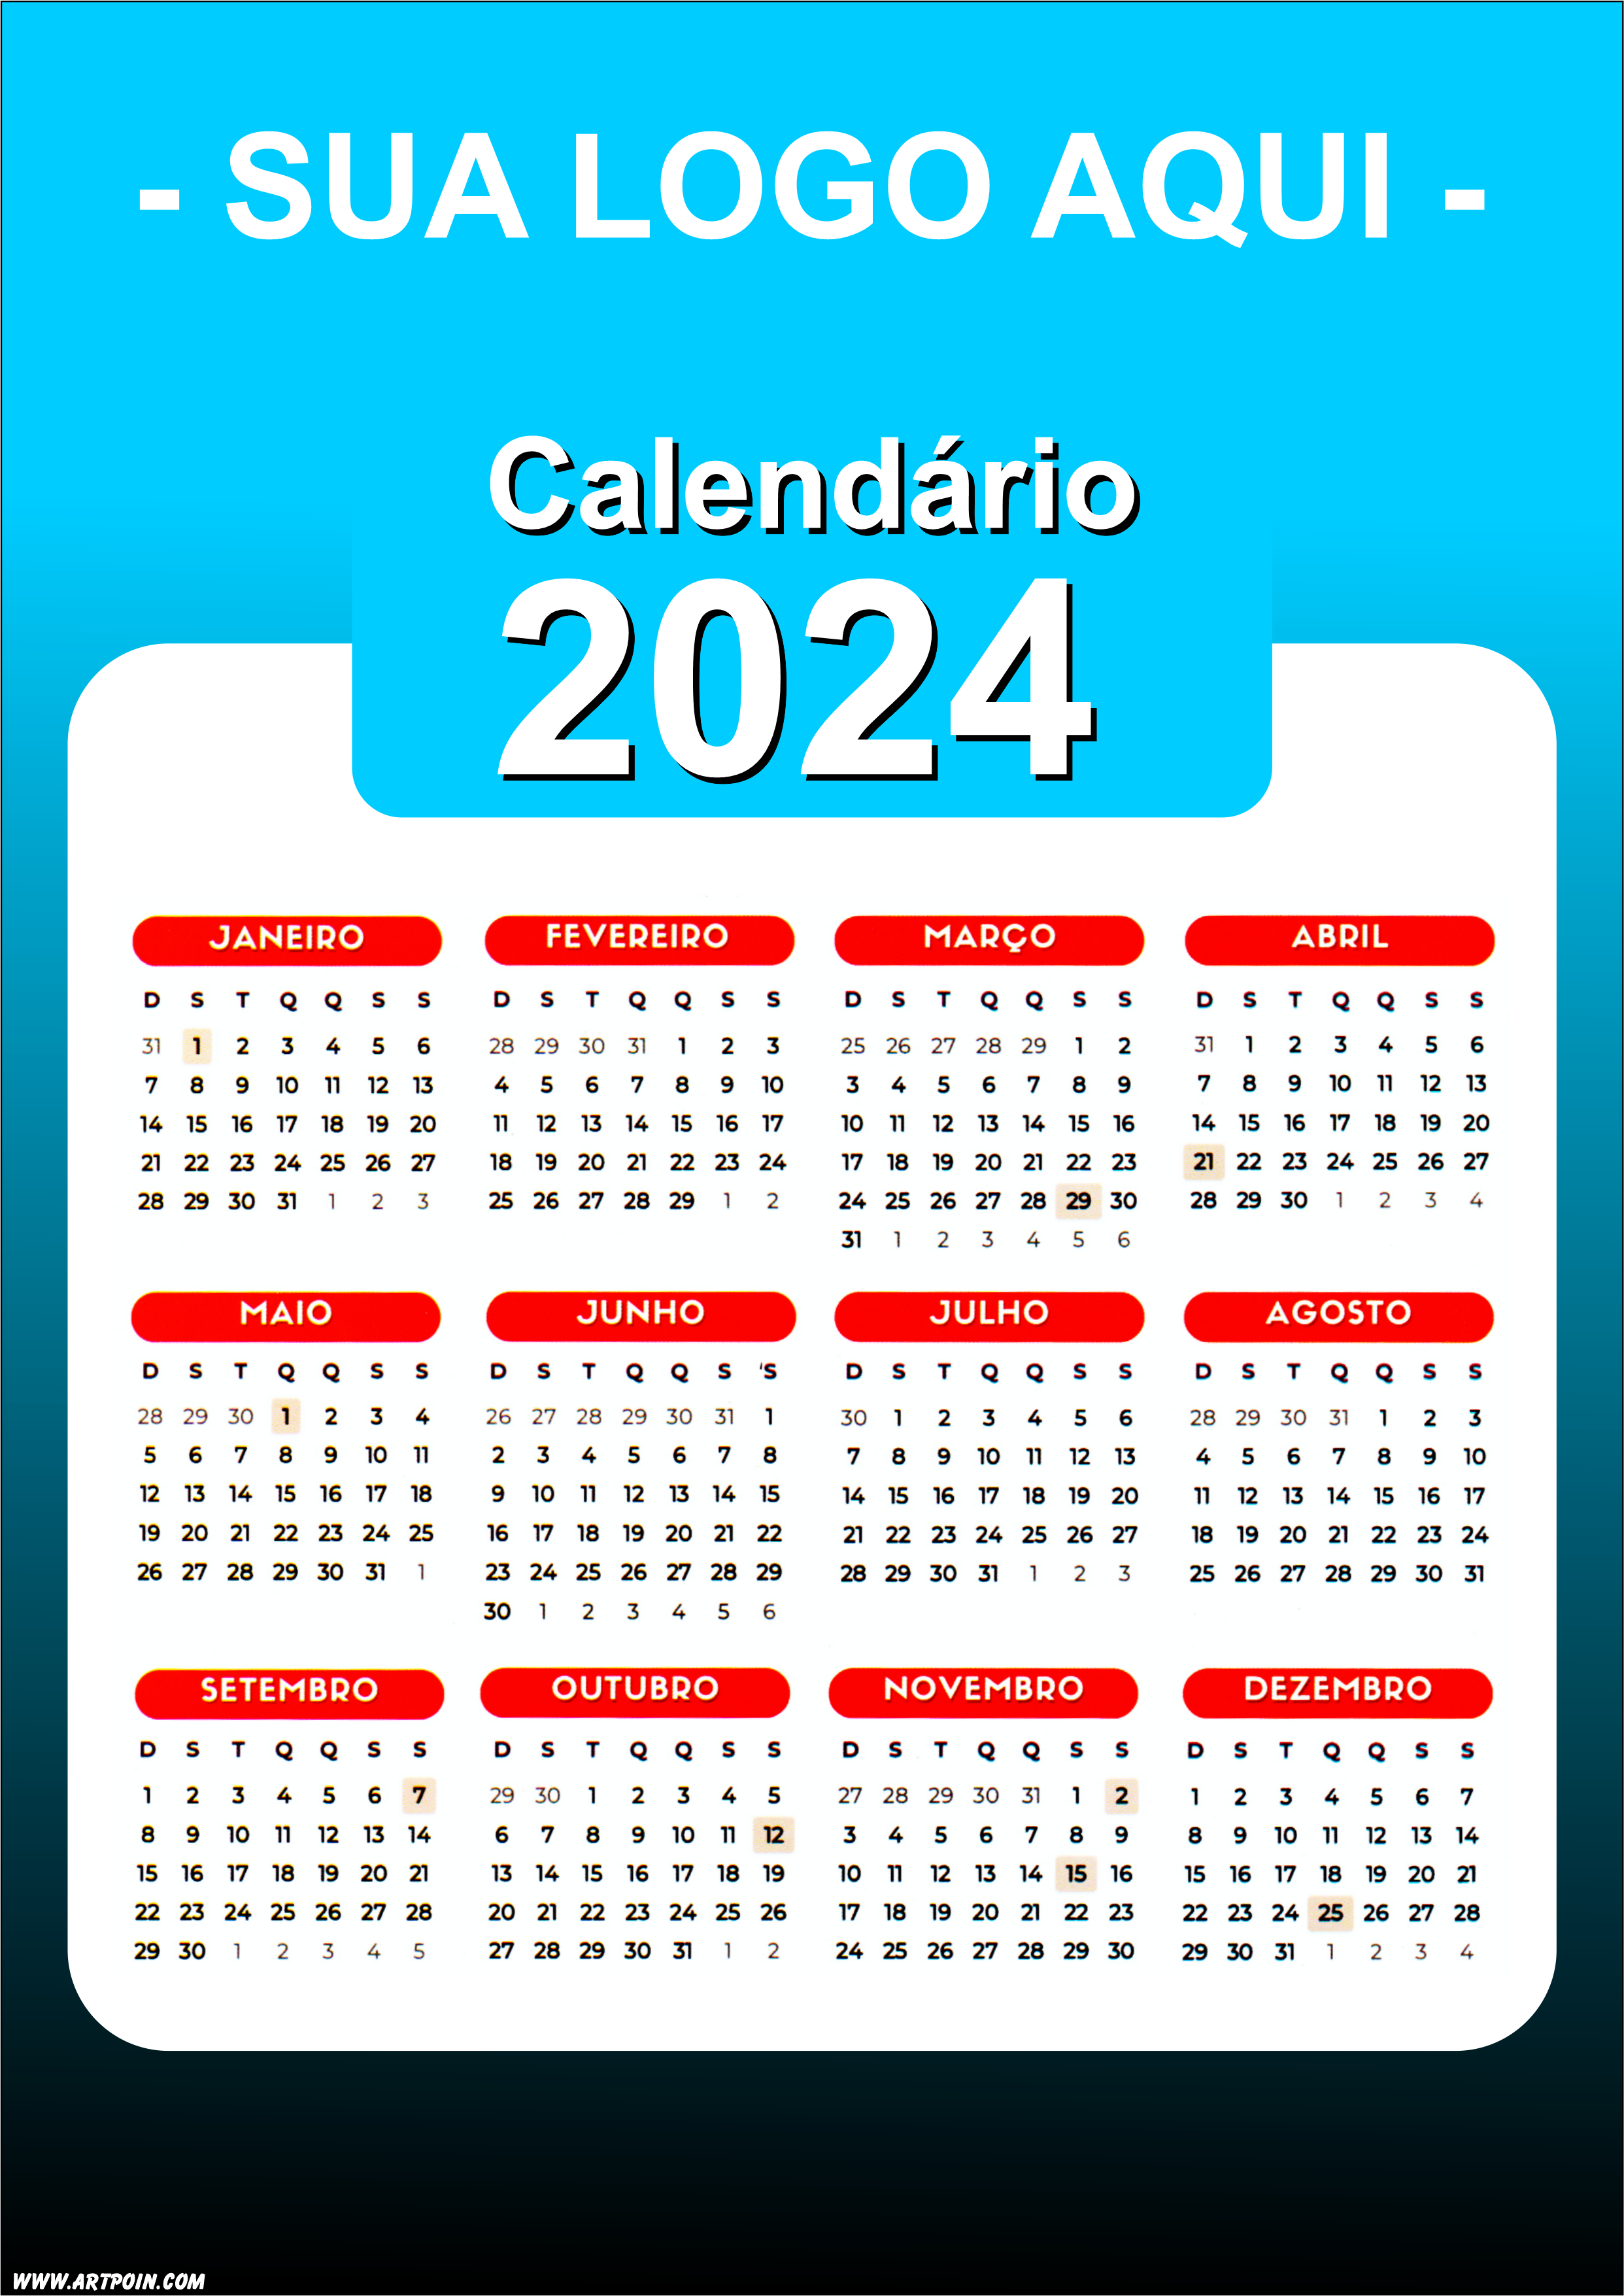 Calendário 2024 modelo azul para personalização com a logo da sua loja png